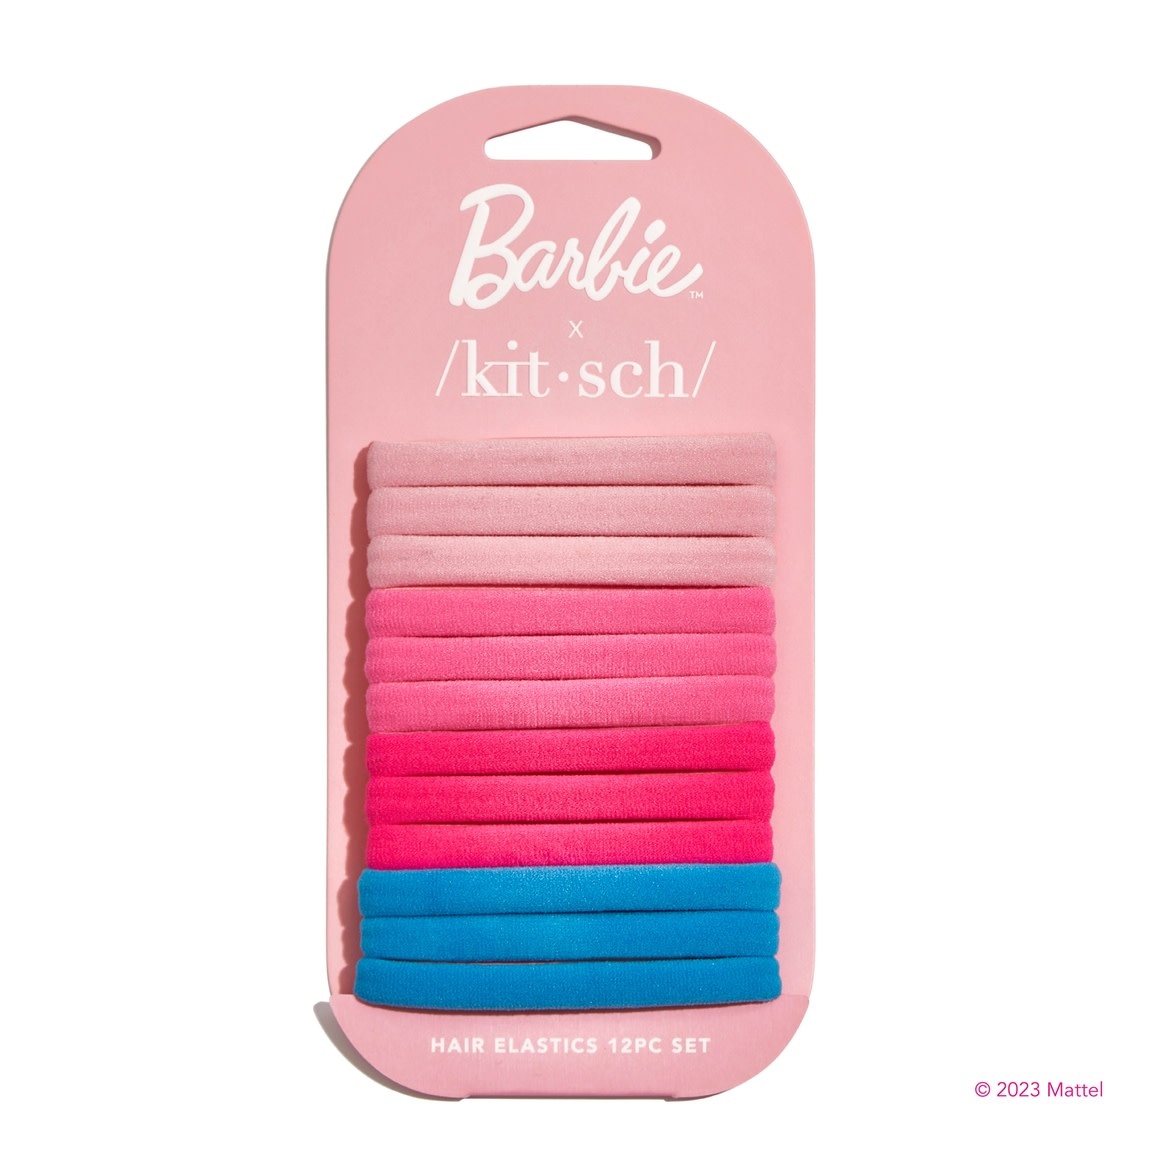 kitsch Barbie X Kitsch Recycled Nylon Elastics 12pc